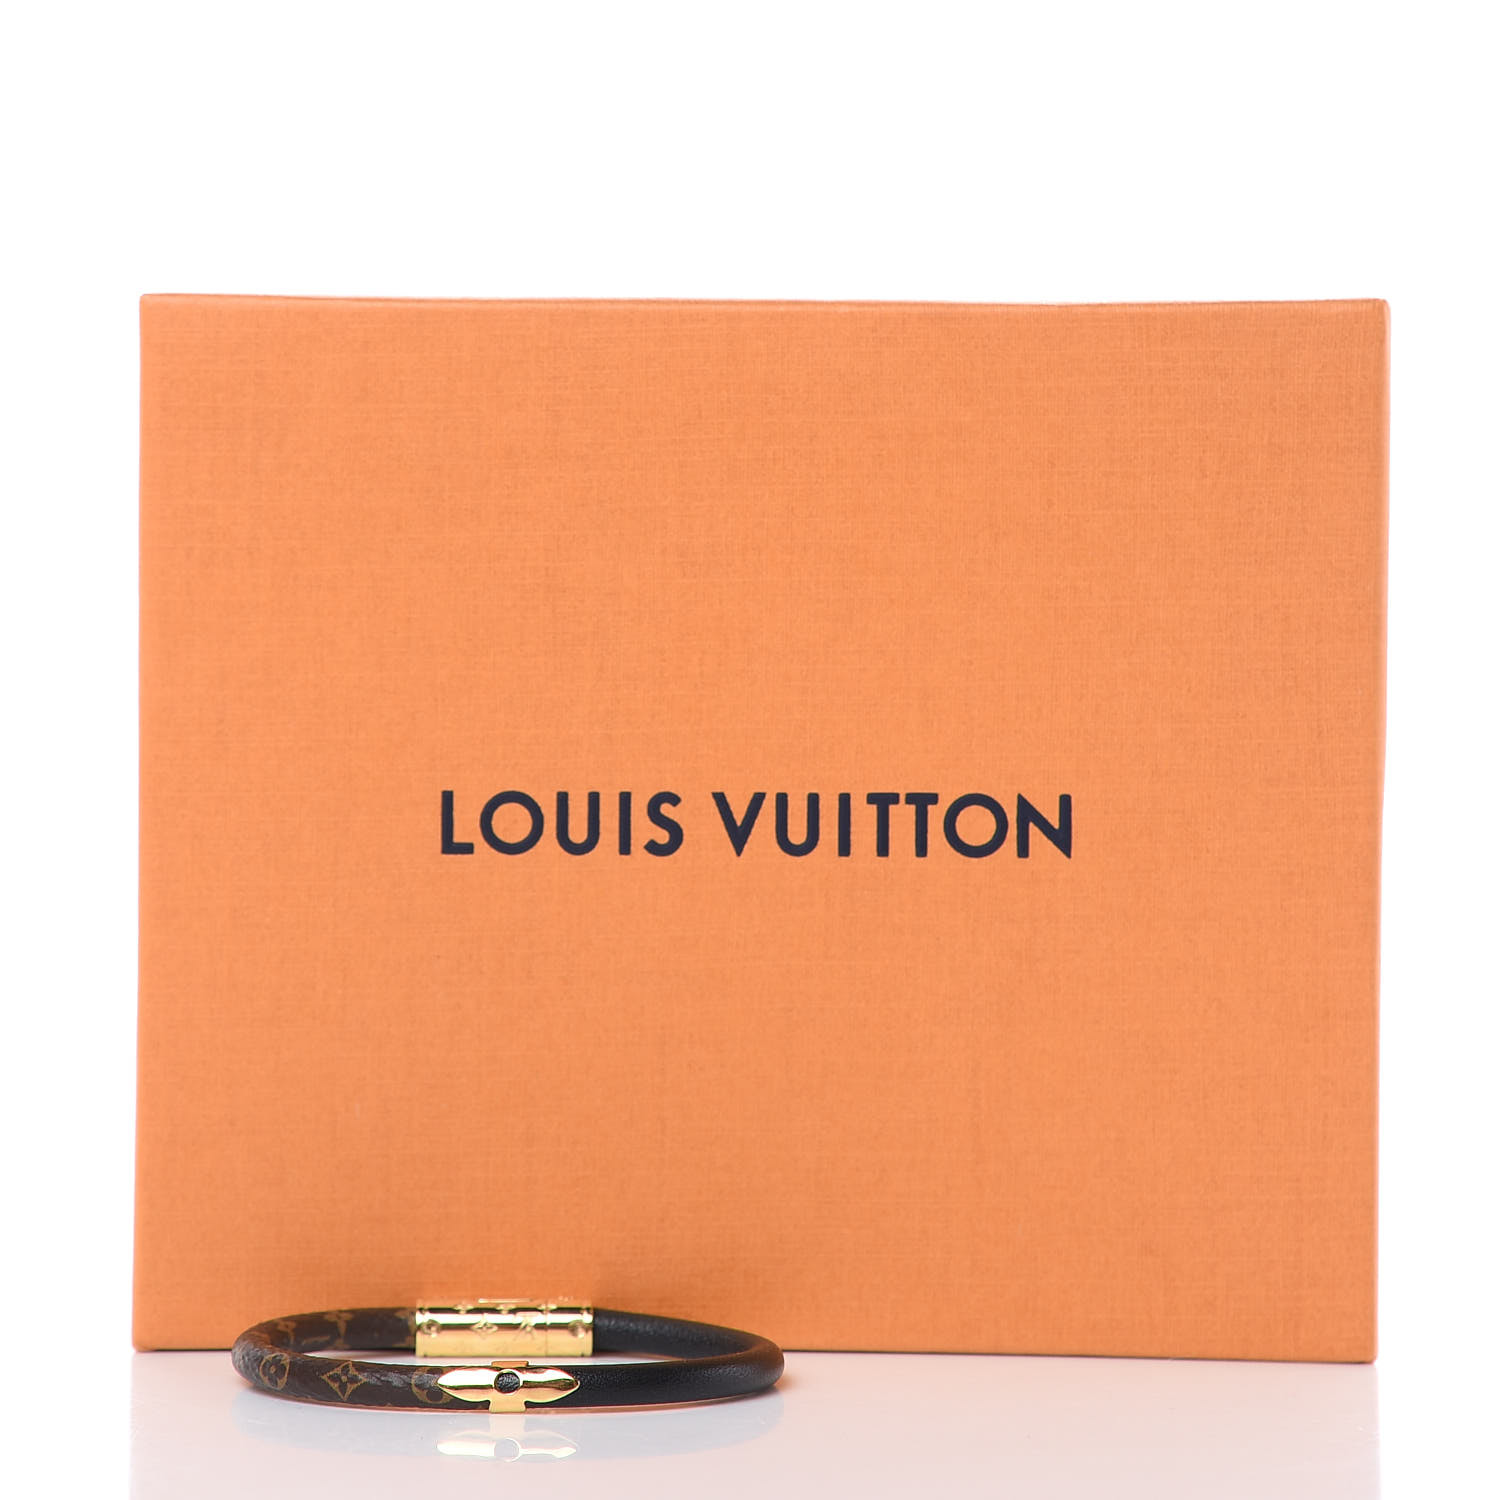 LOUIS VUITTON Monogram Daily Confidential Bracelet 17 Black 402091